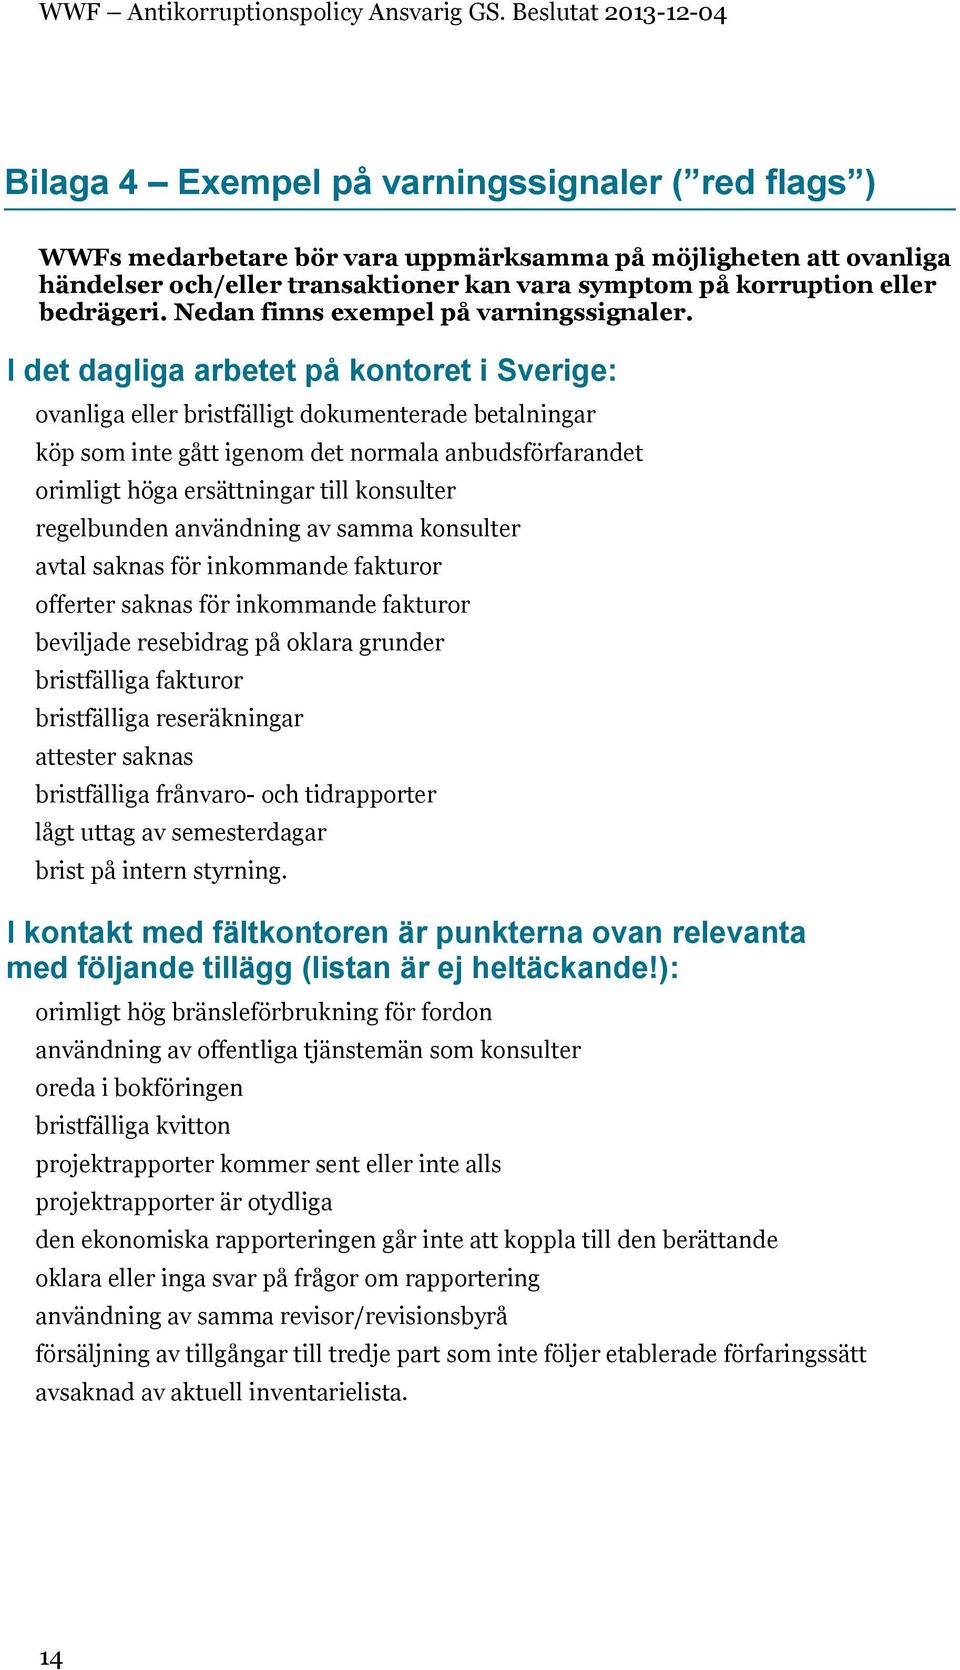 I det dagliga arbetet på kontoret i Sverige: ovanliga eller bristfälligt dokumenterade betalningar köp som inte gått igenom det normala anbudsförfarandet orimligt höga ersättningar till konsulter